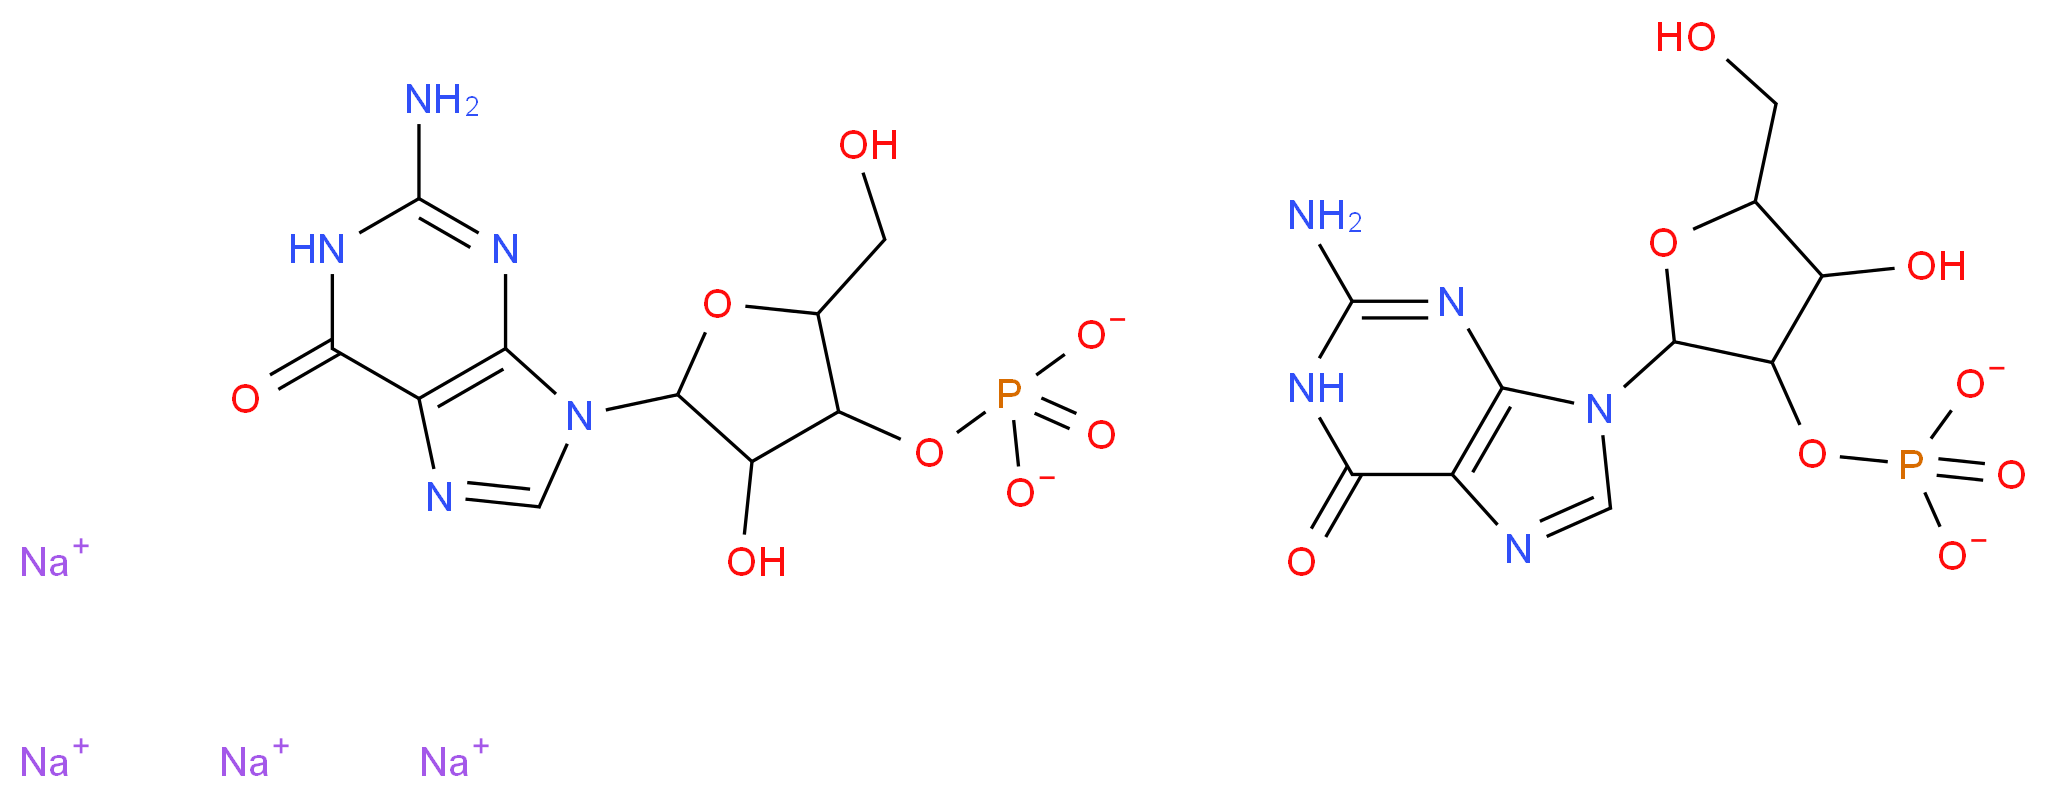 6027-83-4 molecular structure